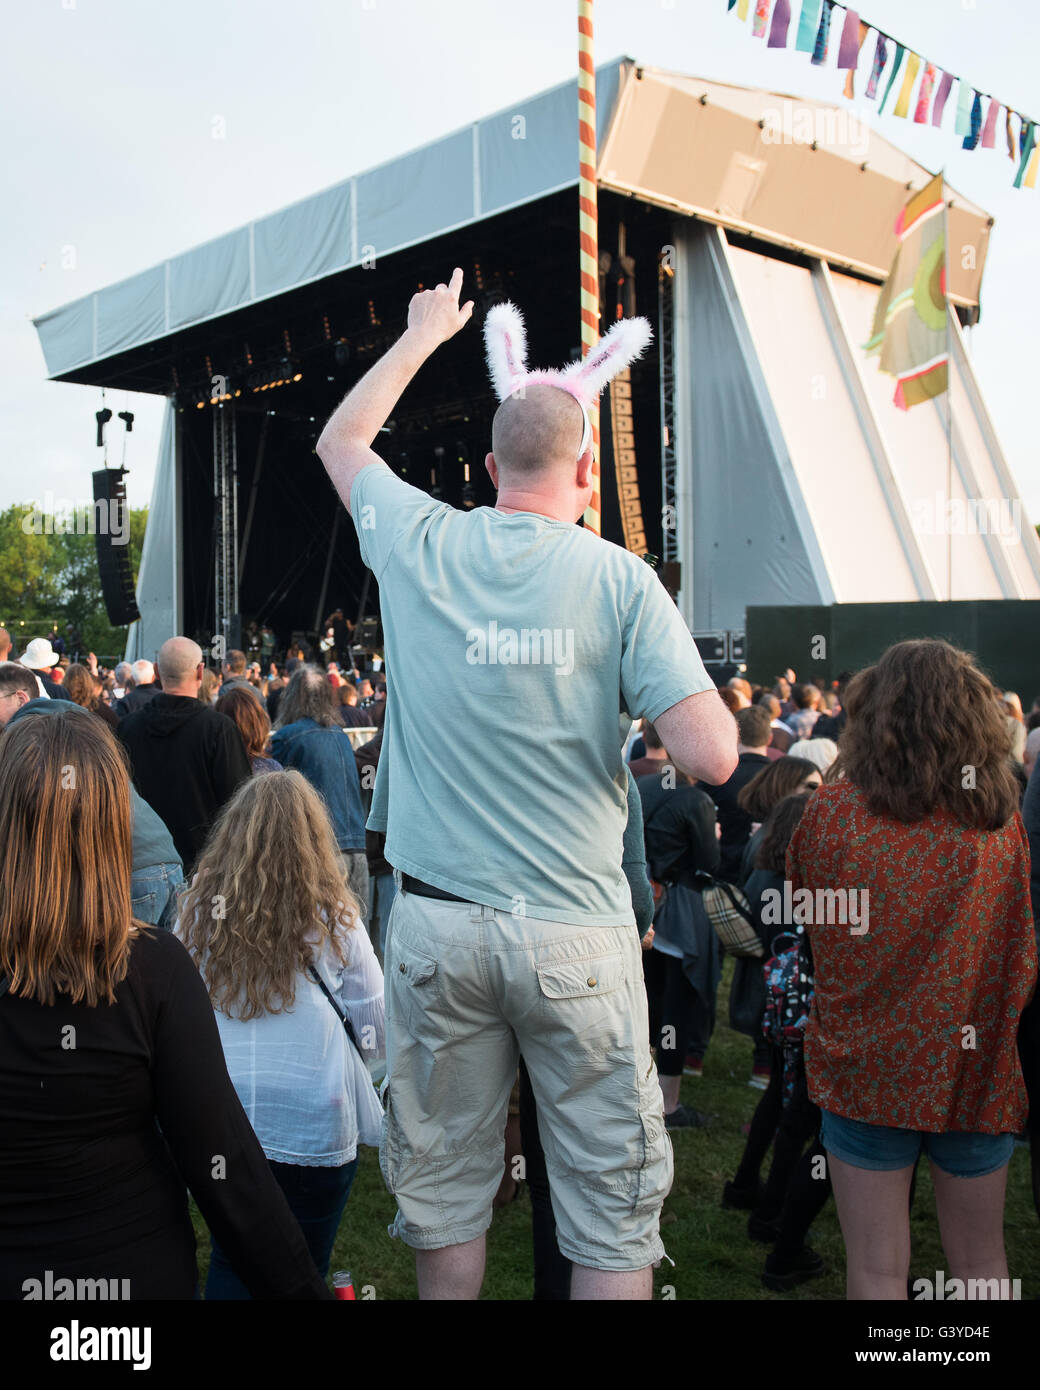 Persone di mezza età uomo calvo in silly copricapo 'dannuncio dancing' al Nemico pubblico al festival di musica, Oxford Regno Unito Foto Stock